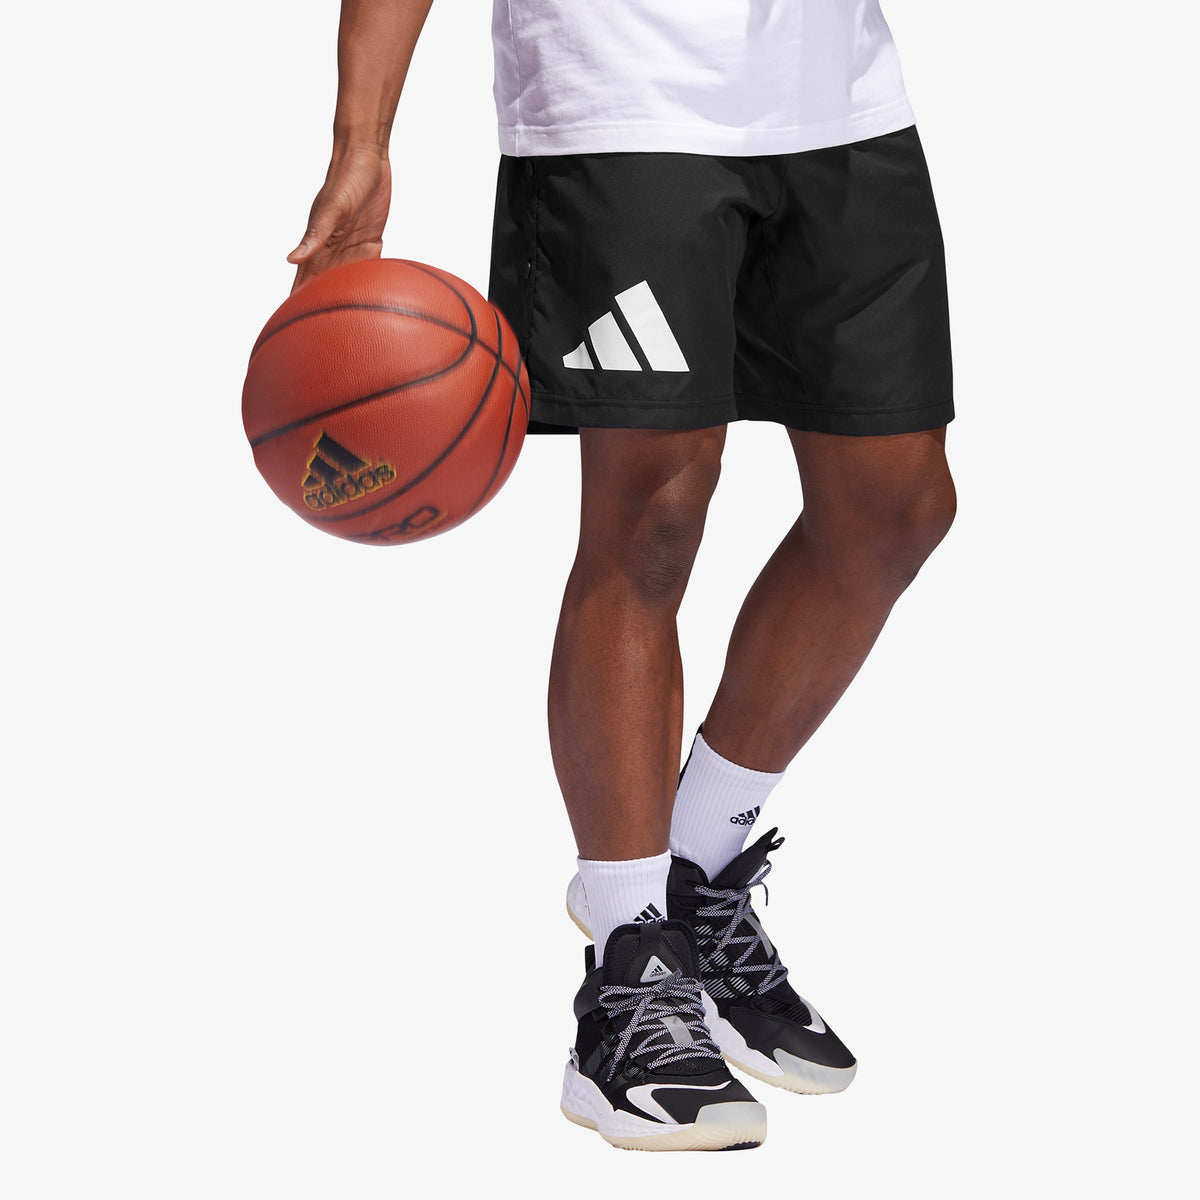 Legends Basketball Shorts - Black